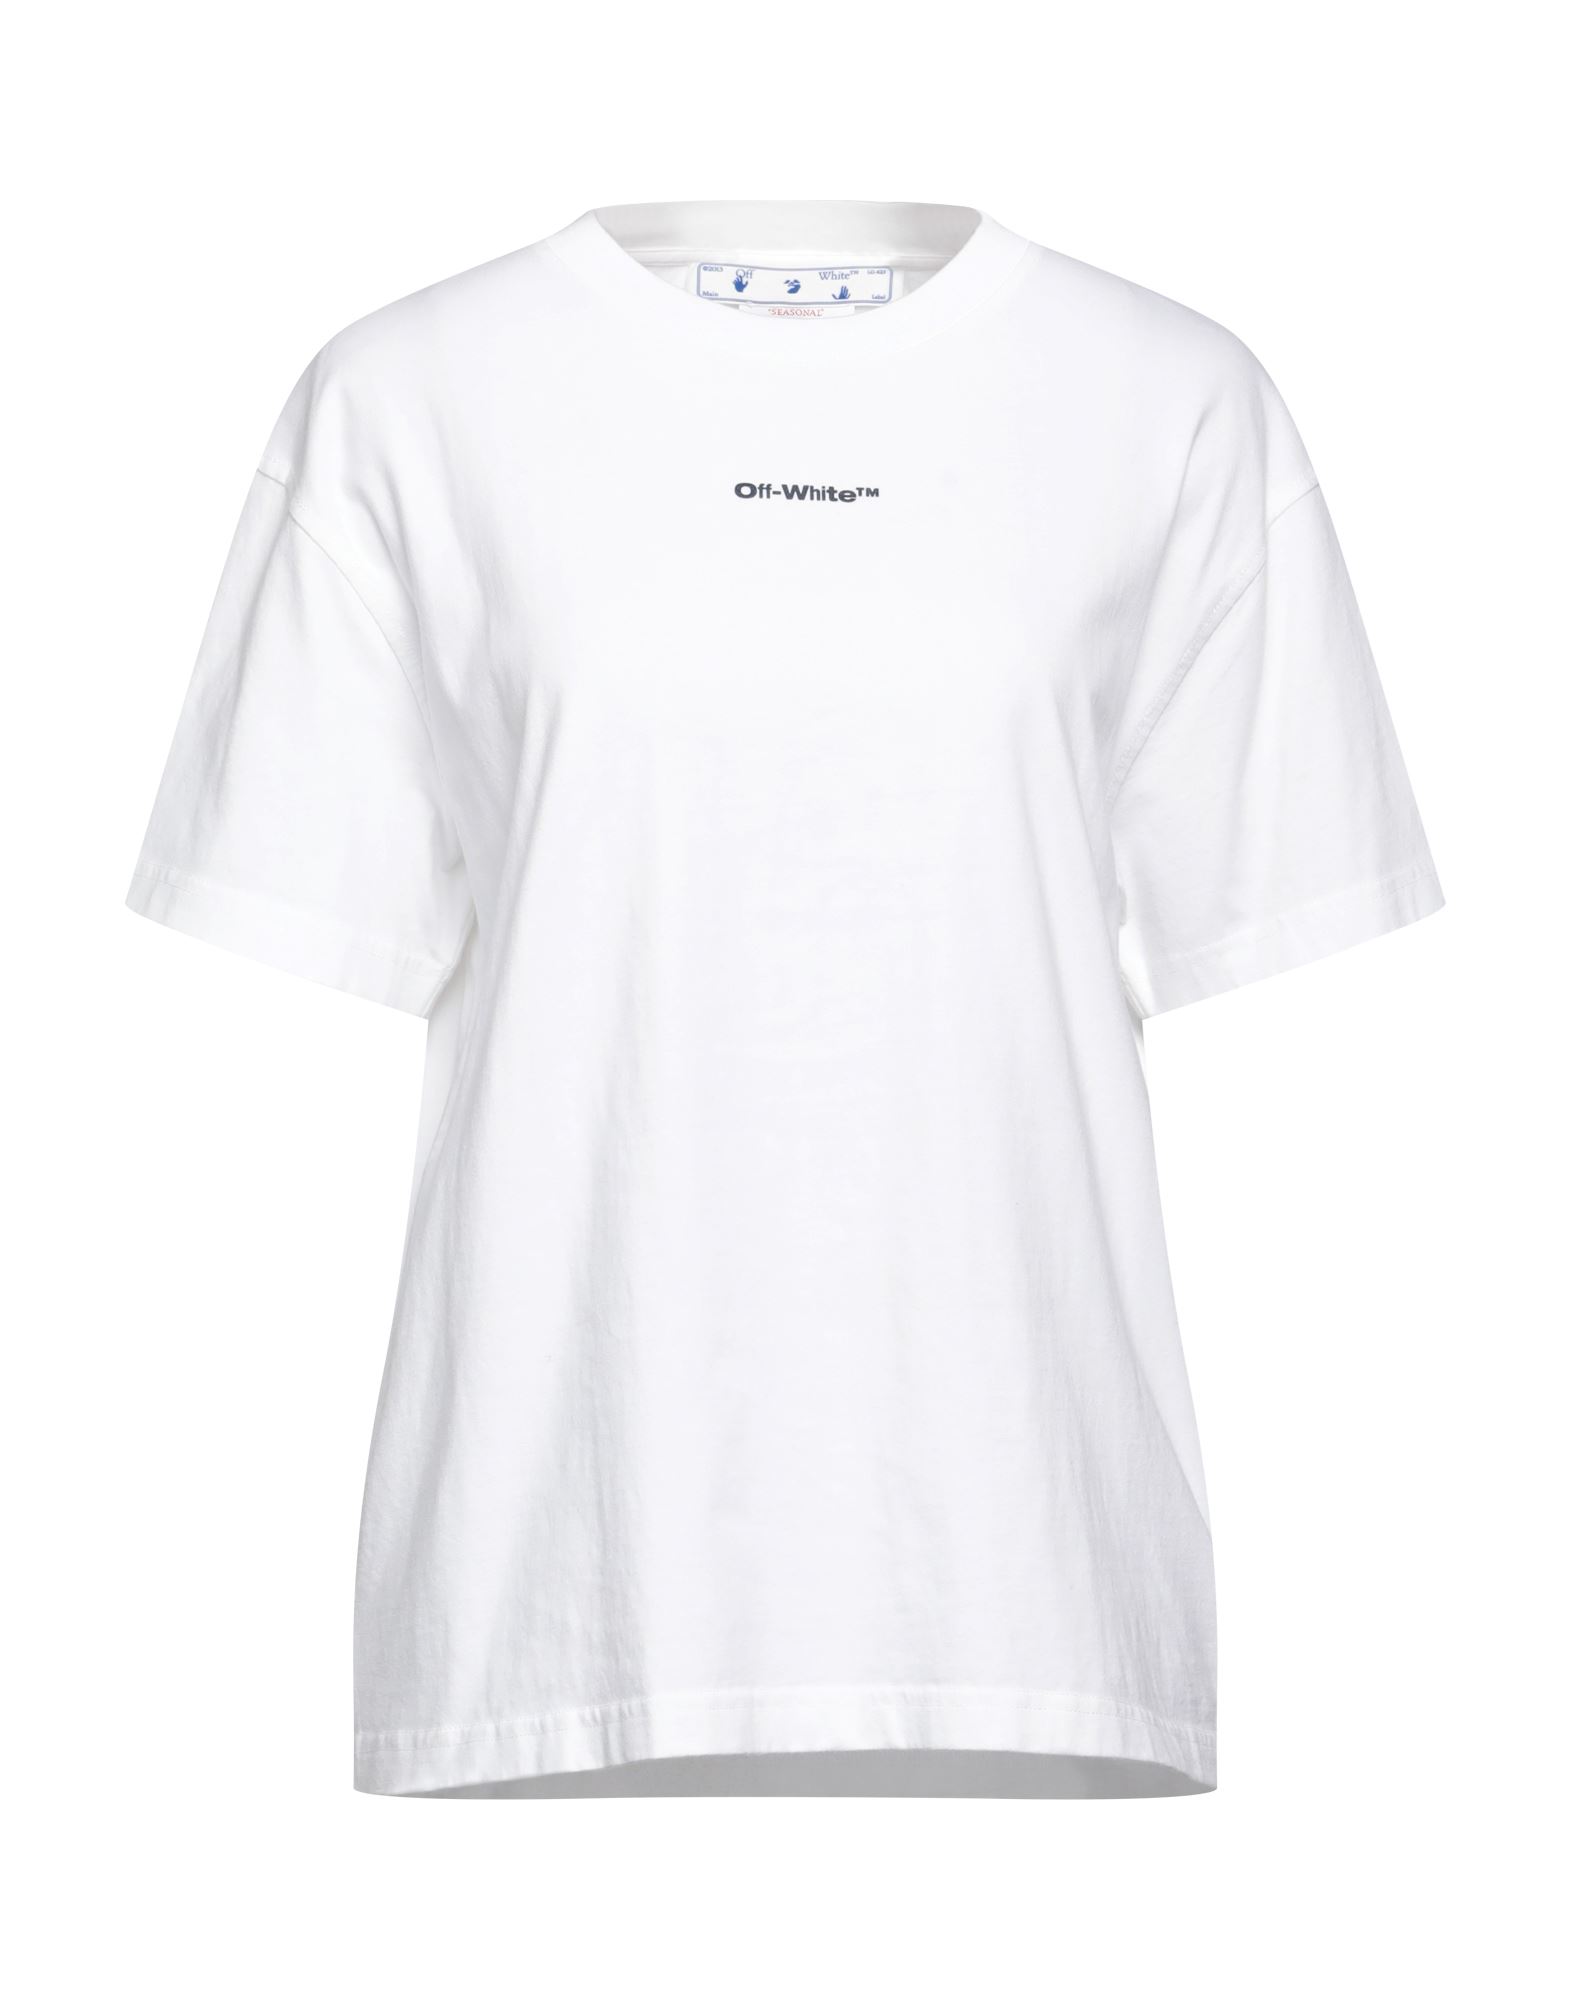 OFF-WHITE™ T-shirts Damen Weiß von OFF-WHITE™